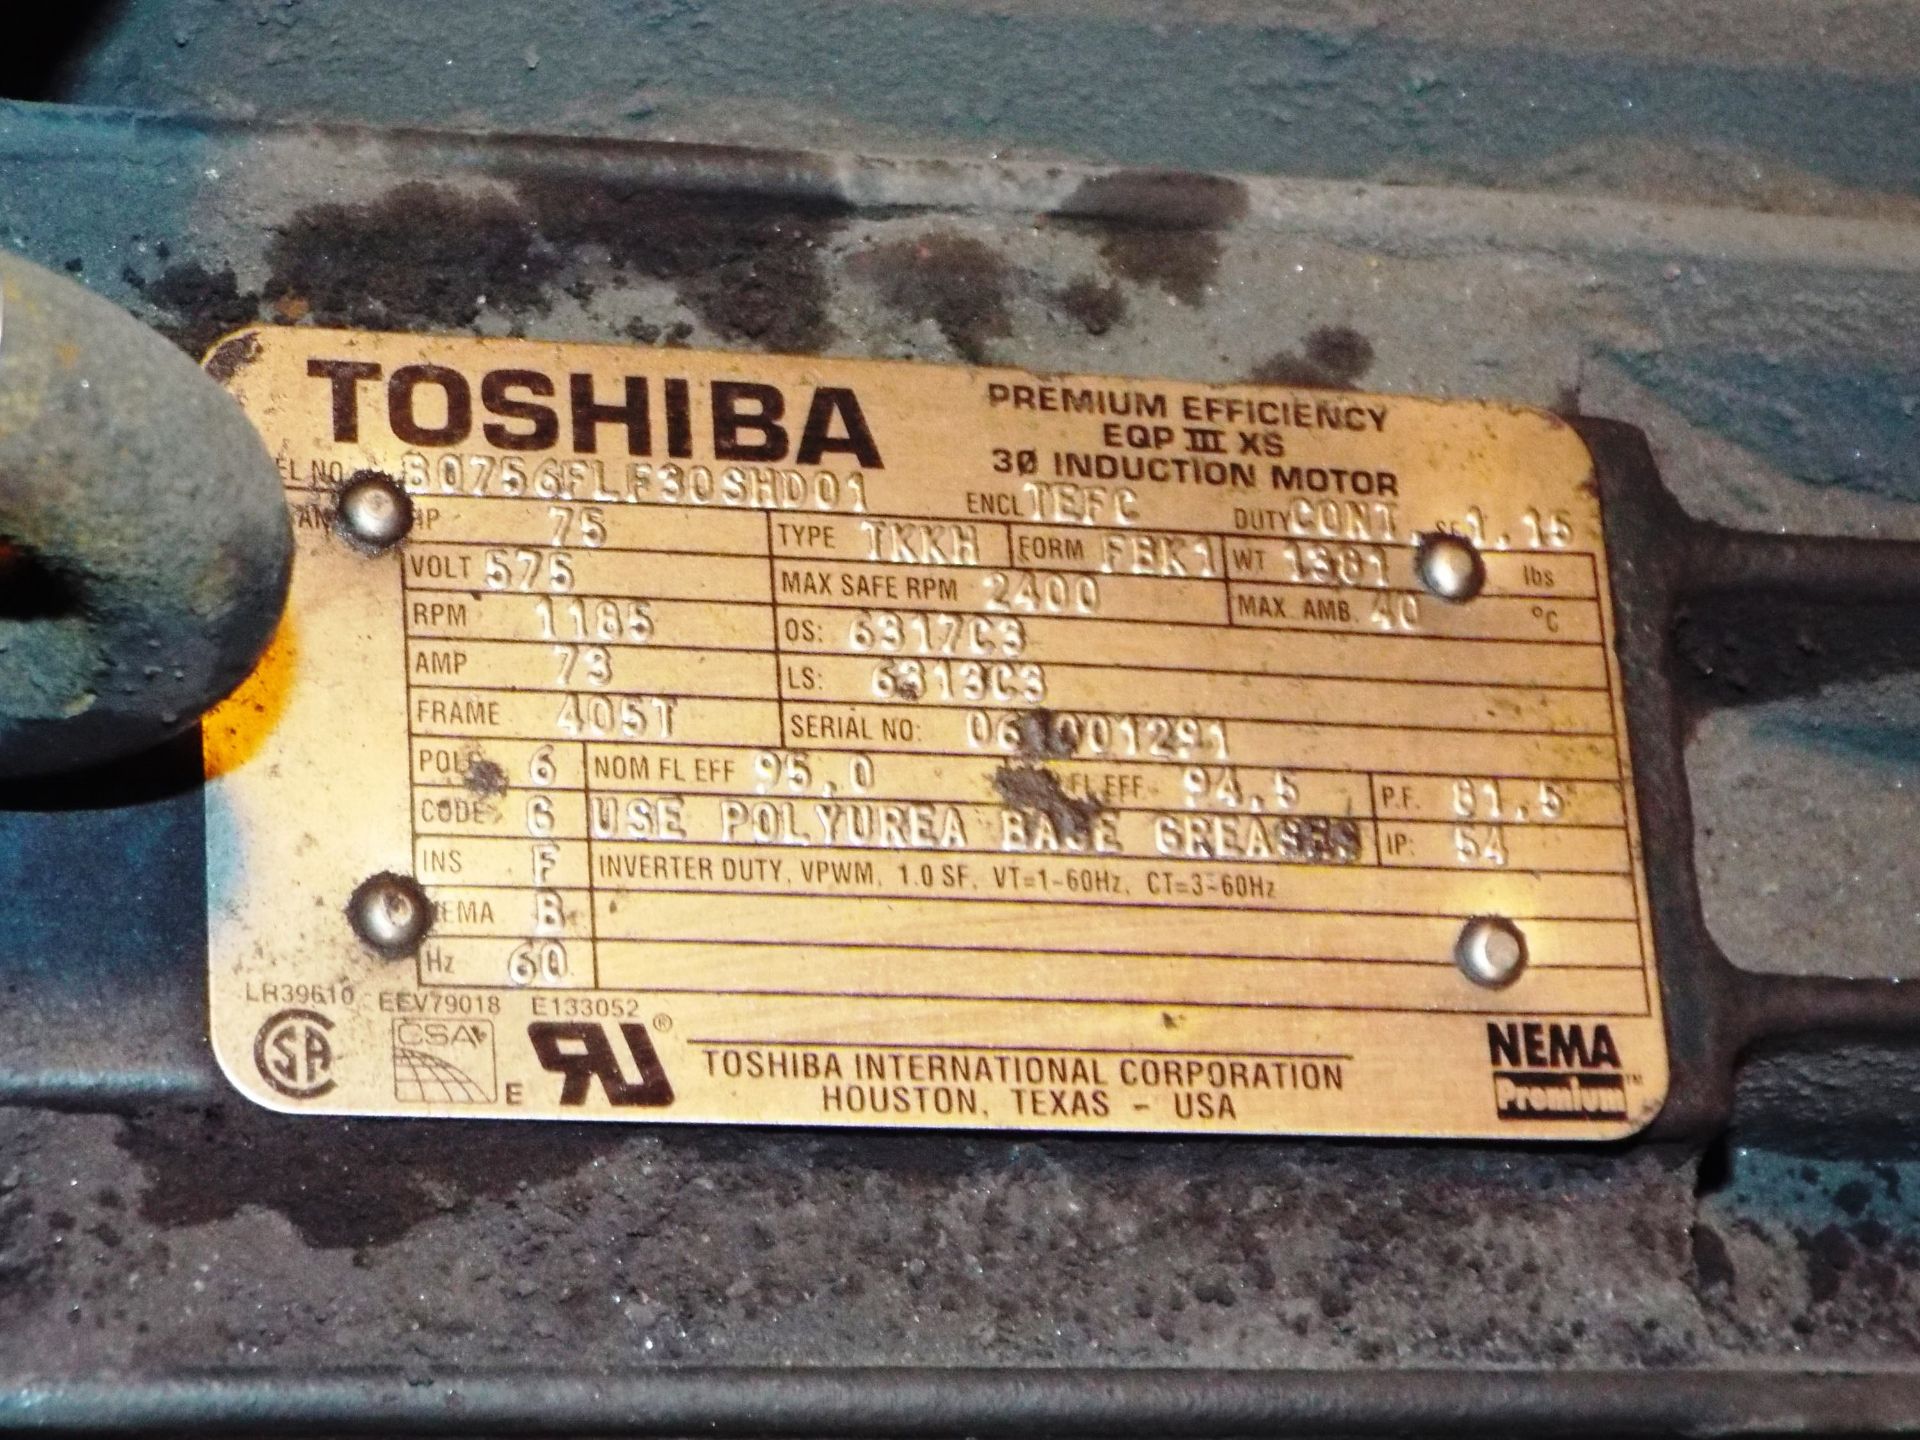 TOSHIBA 75 HP, 575V, 73 AMP, 2400 RPM, 3-PHASE INDUCTION MOTOR - Image 2 of 2